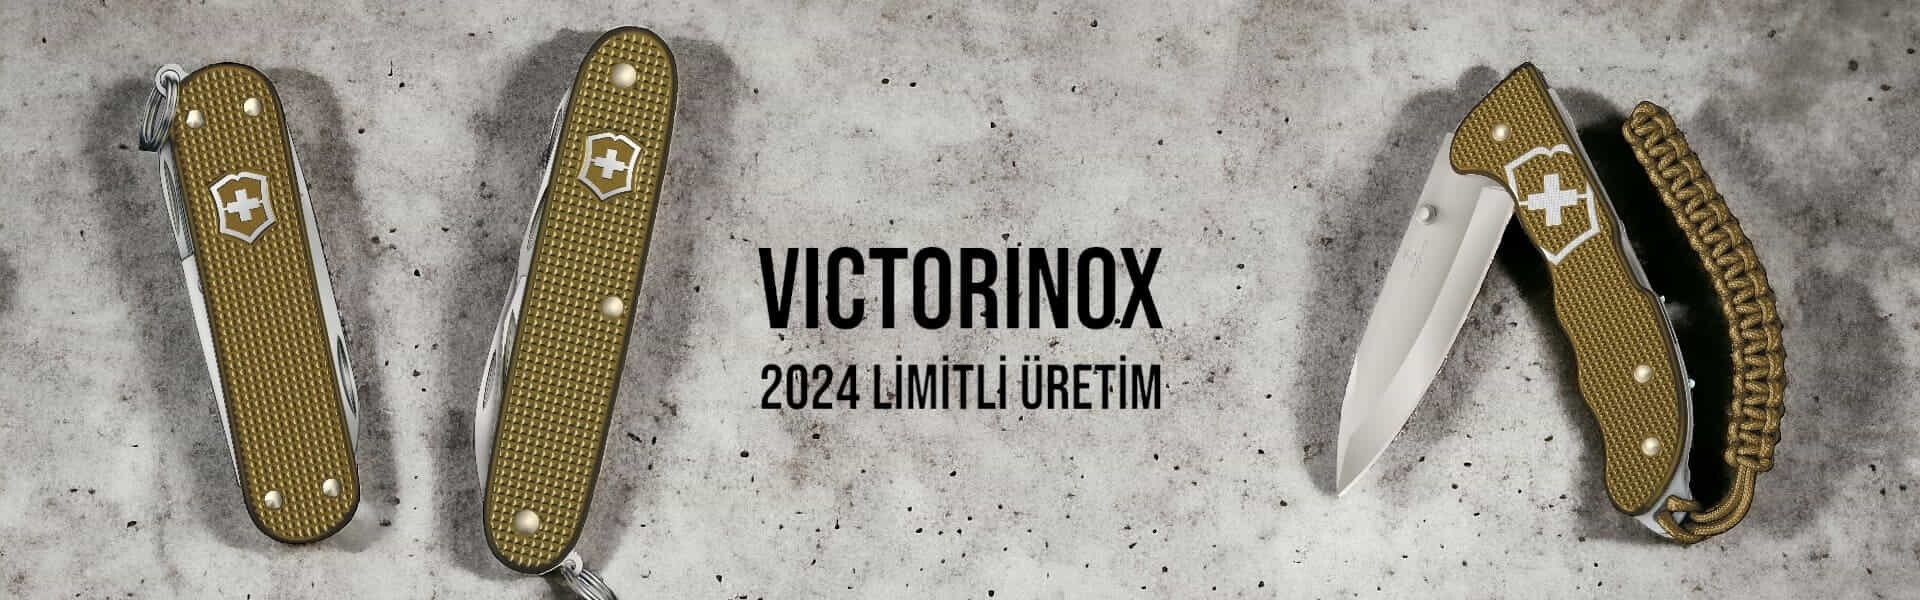 Victorinox Limitli Üretim